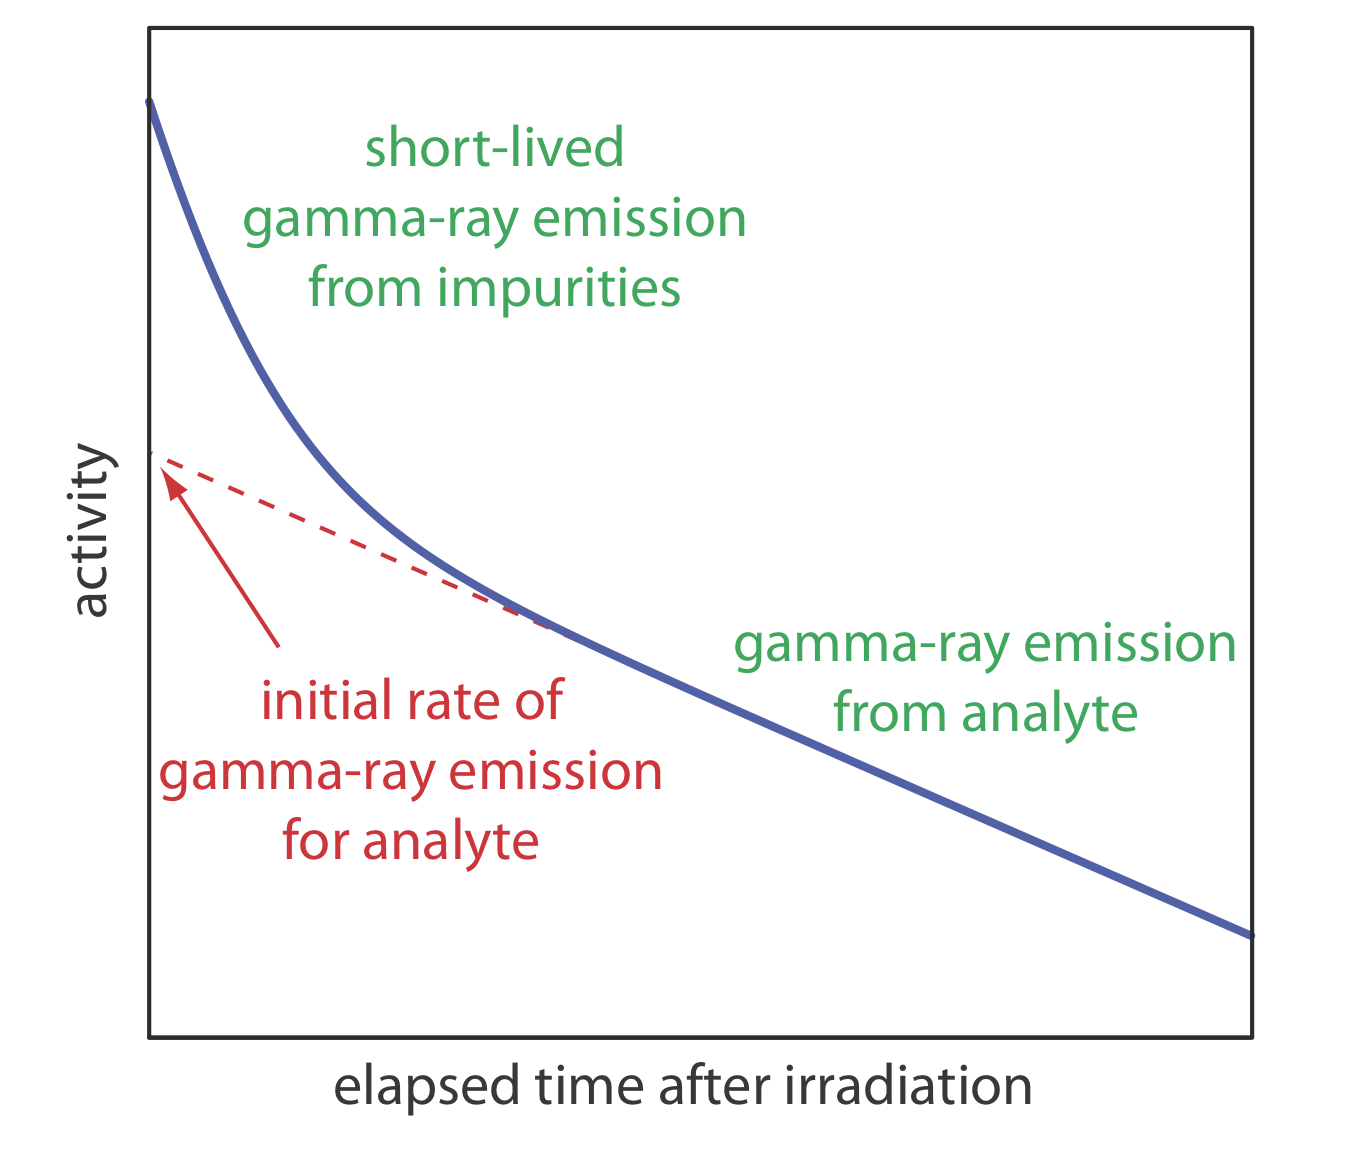 Se muestra la gráfica del tiempo transcurrido después de la irradiación versus la actividad. La emisión de rayos gamma de corta duración resultante de impurezas provoca una fuerte caída en la actividad directamente después de la irradiación antes de seguir una caída lineal en la actividad de la emisión de rayos gamma del analito.